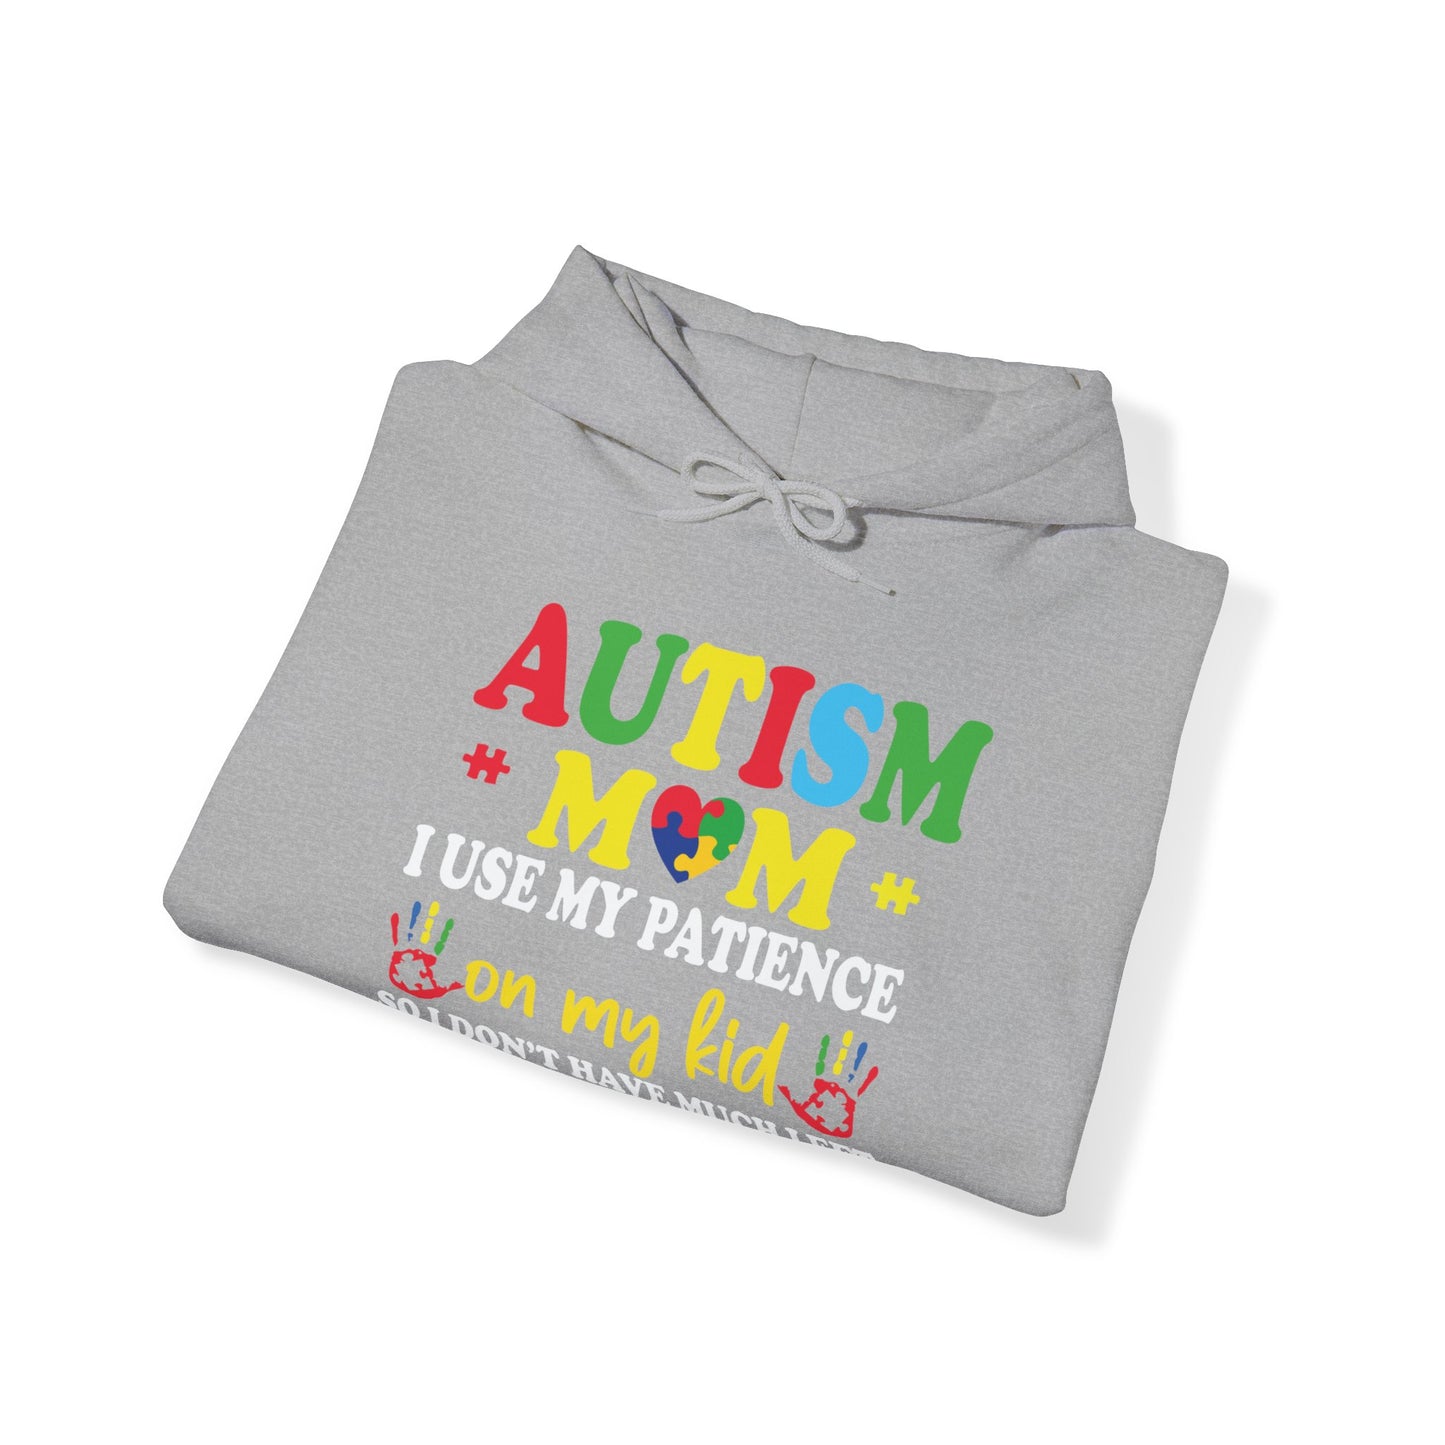 Autism Mom Hooded Sweatshirt